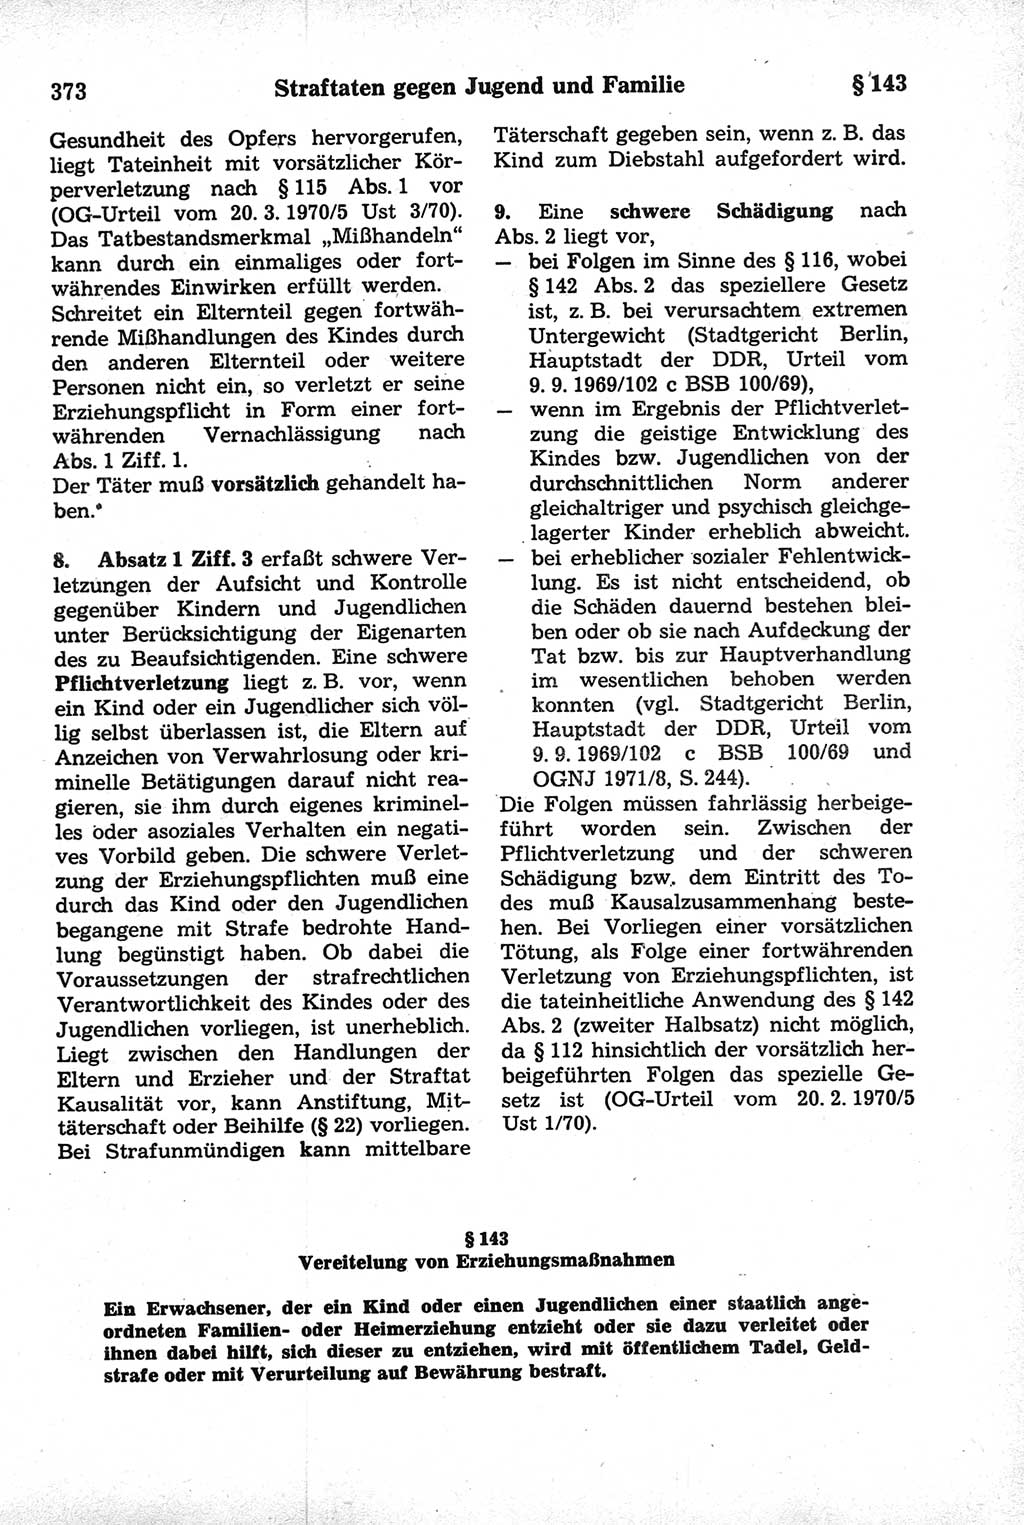 Strafrecht der Deutschen Demokratischen Republik (DDR), Kommentar zum Strafgesetzbuch (StGB) 1981, Seite 373 (Strafr. DDR Komm. StGB 1981, S. 373)